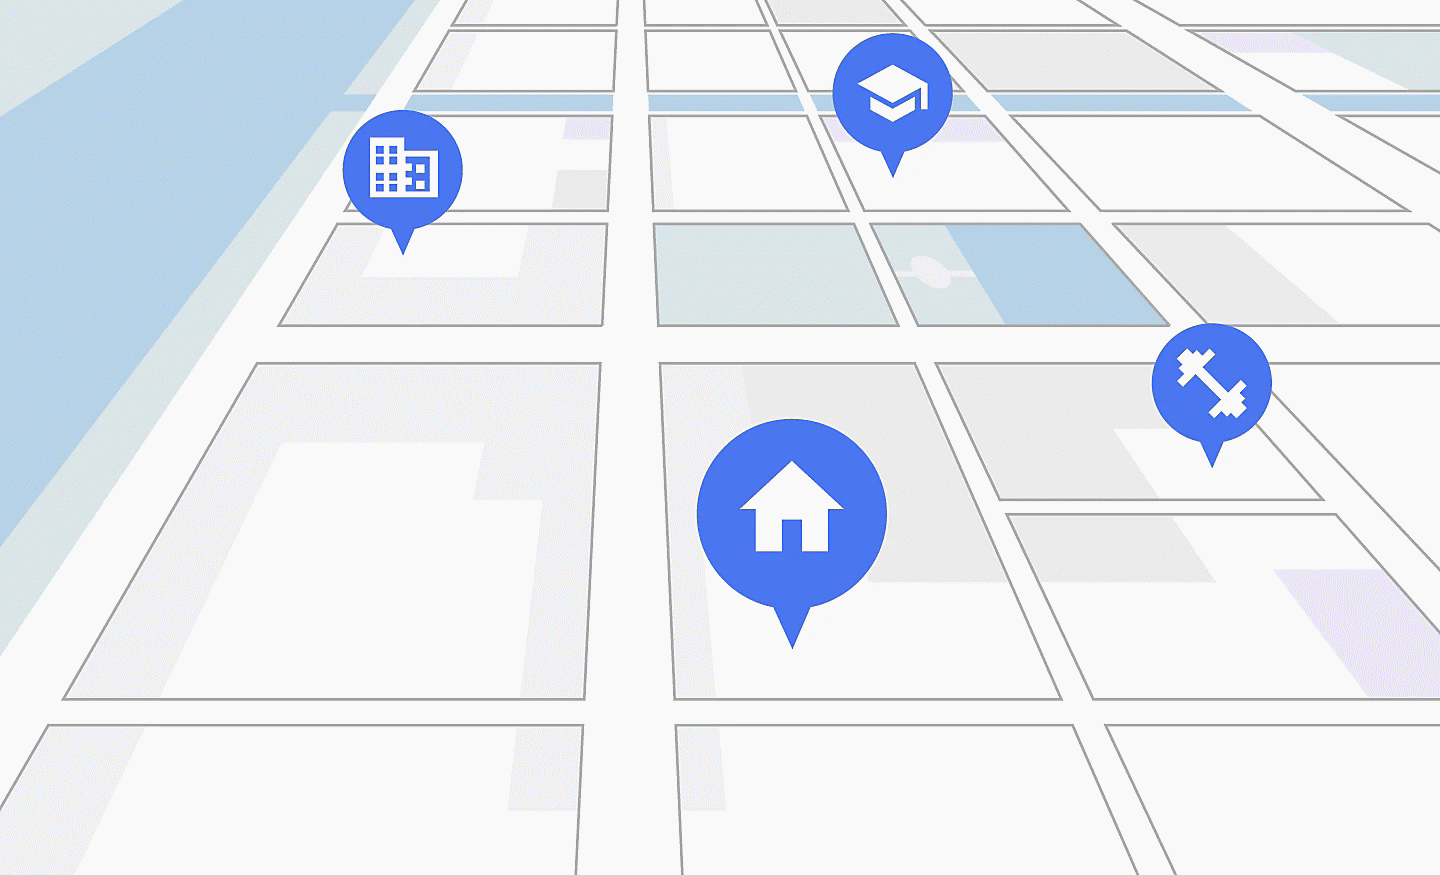 Straßenkarte im Stil eines Navigationsgeräts mit Anzeige von Sonderzielen